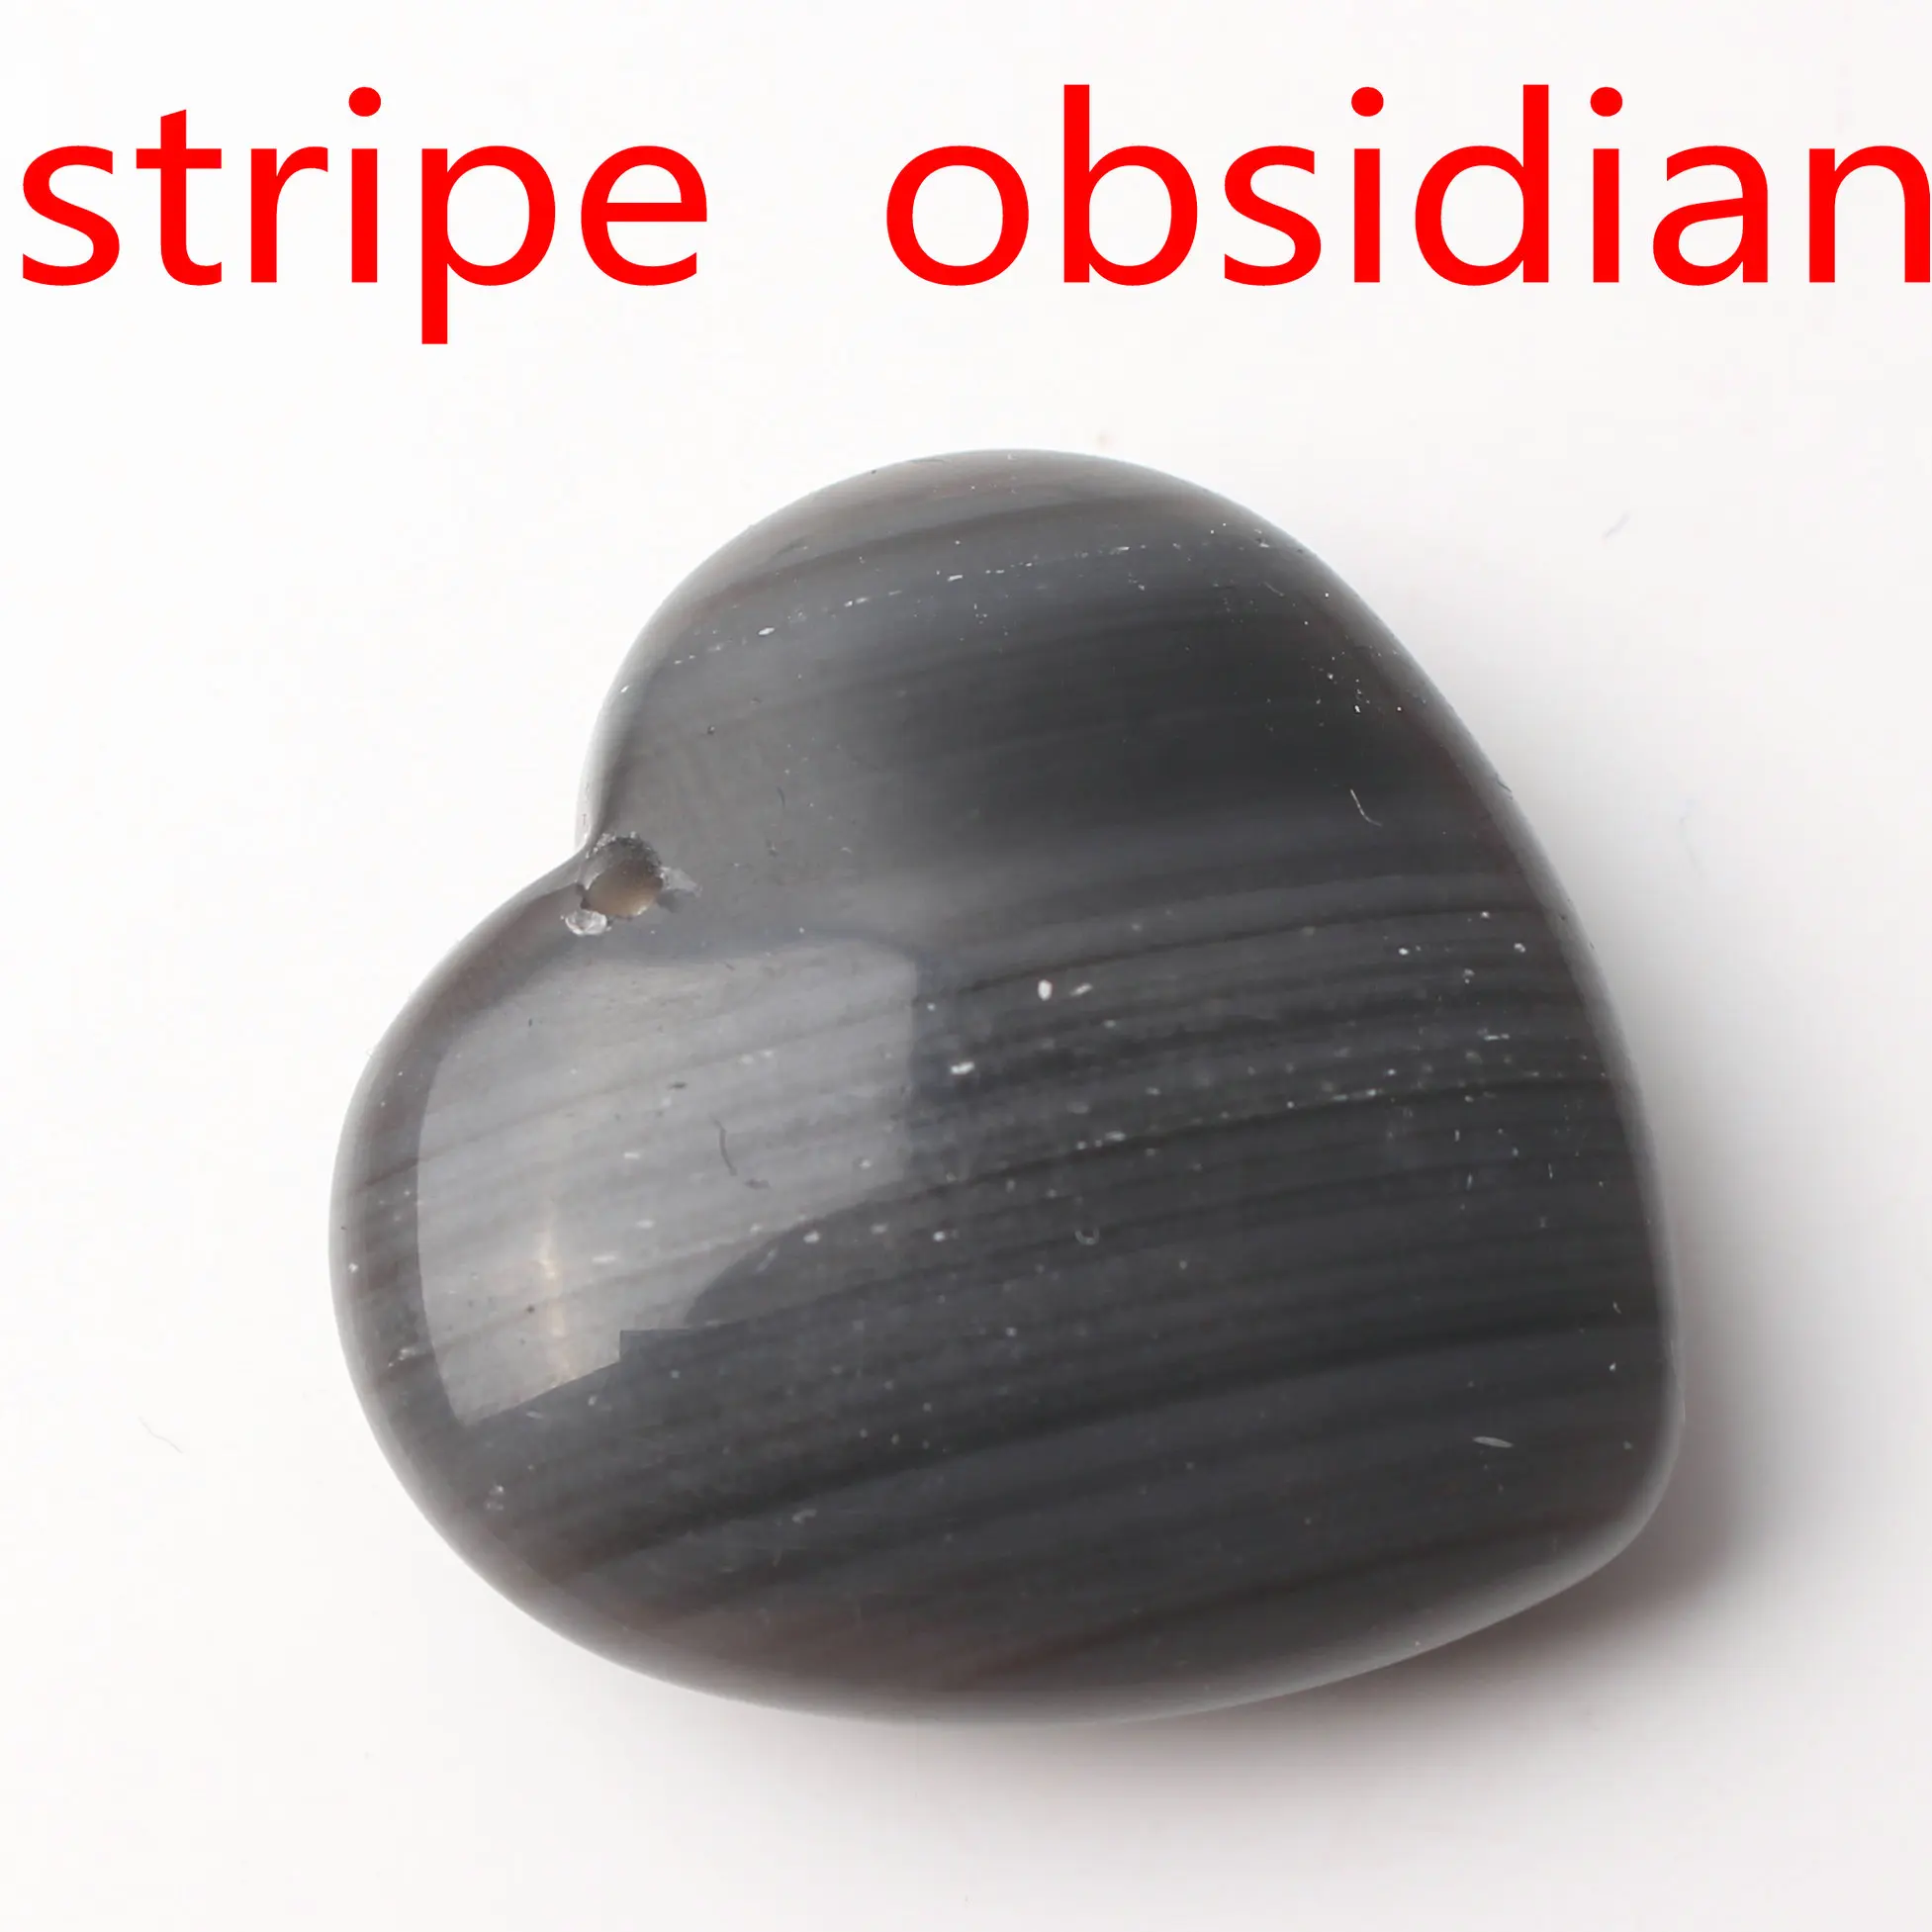 Натуральный кристалл Аметист Роза Кварц сердце форма кулон с отверстием ожерелье аксессуары ювелирных изделий камень, реики целебный подарок - Цвет: Stripe obsidian